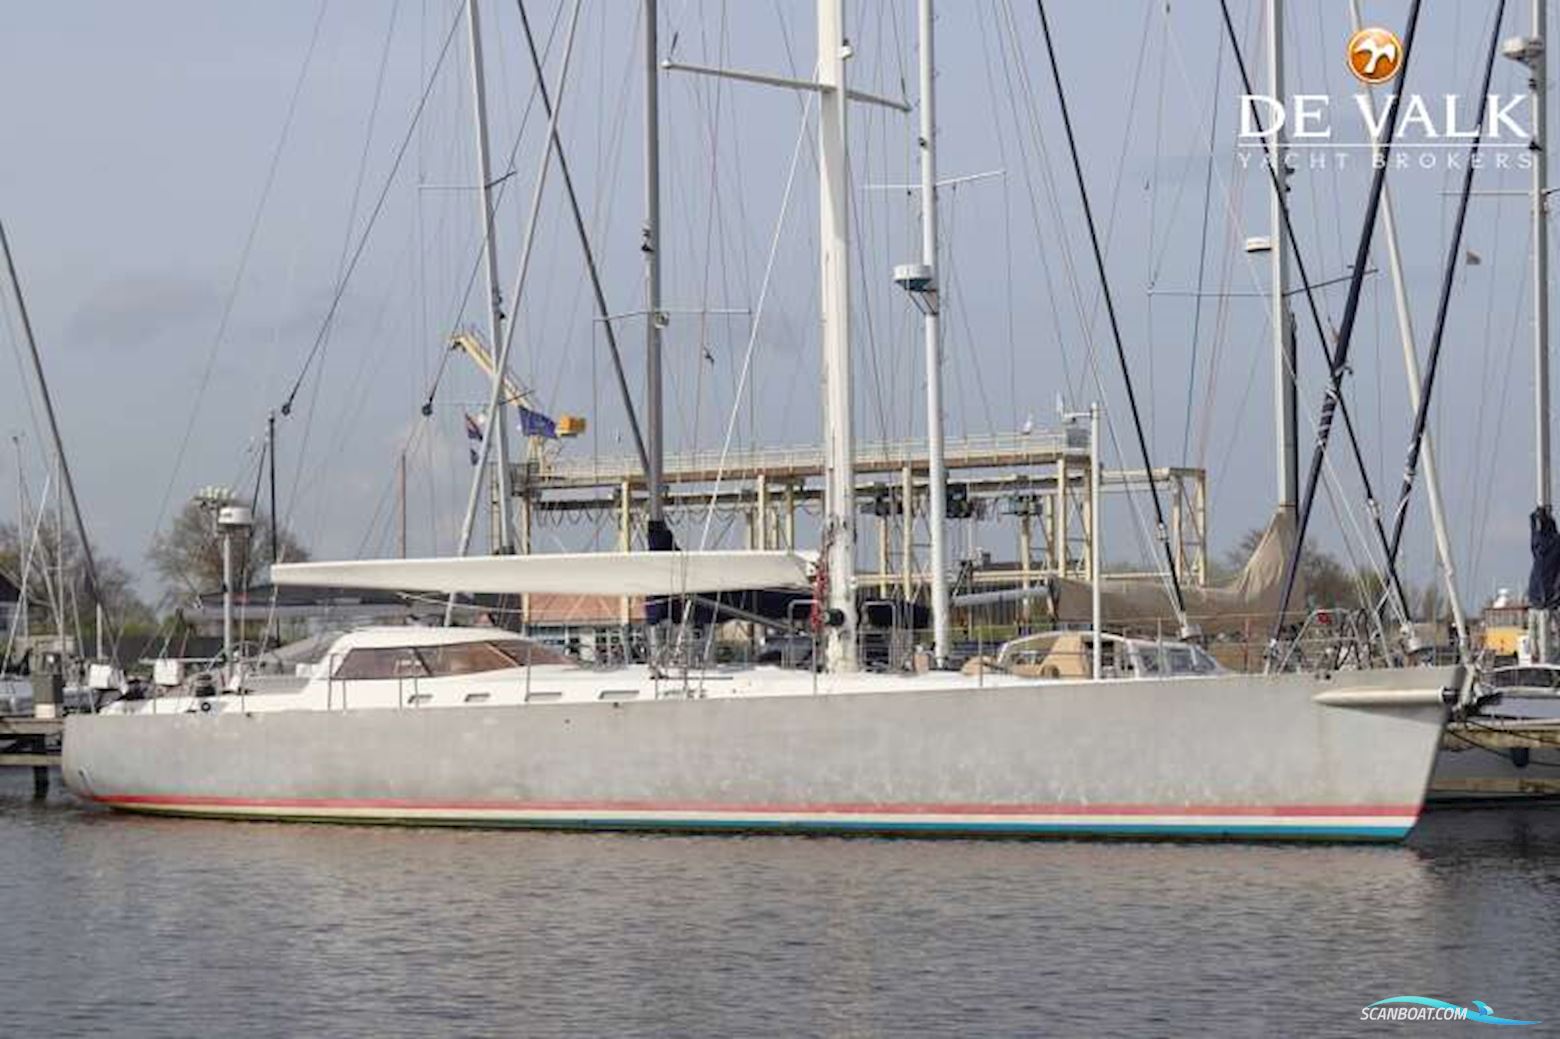 Van de Stadt Stadtship 70 Sailing boat 2008, with Perkins Sabre engine, The Netherlands